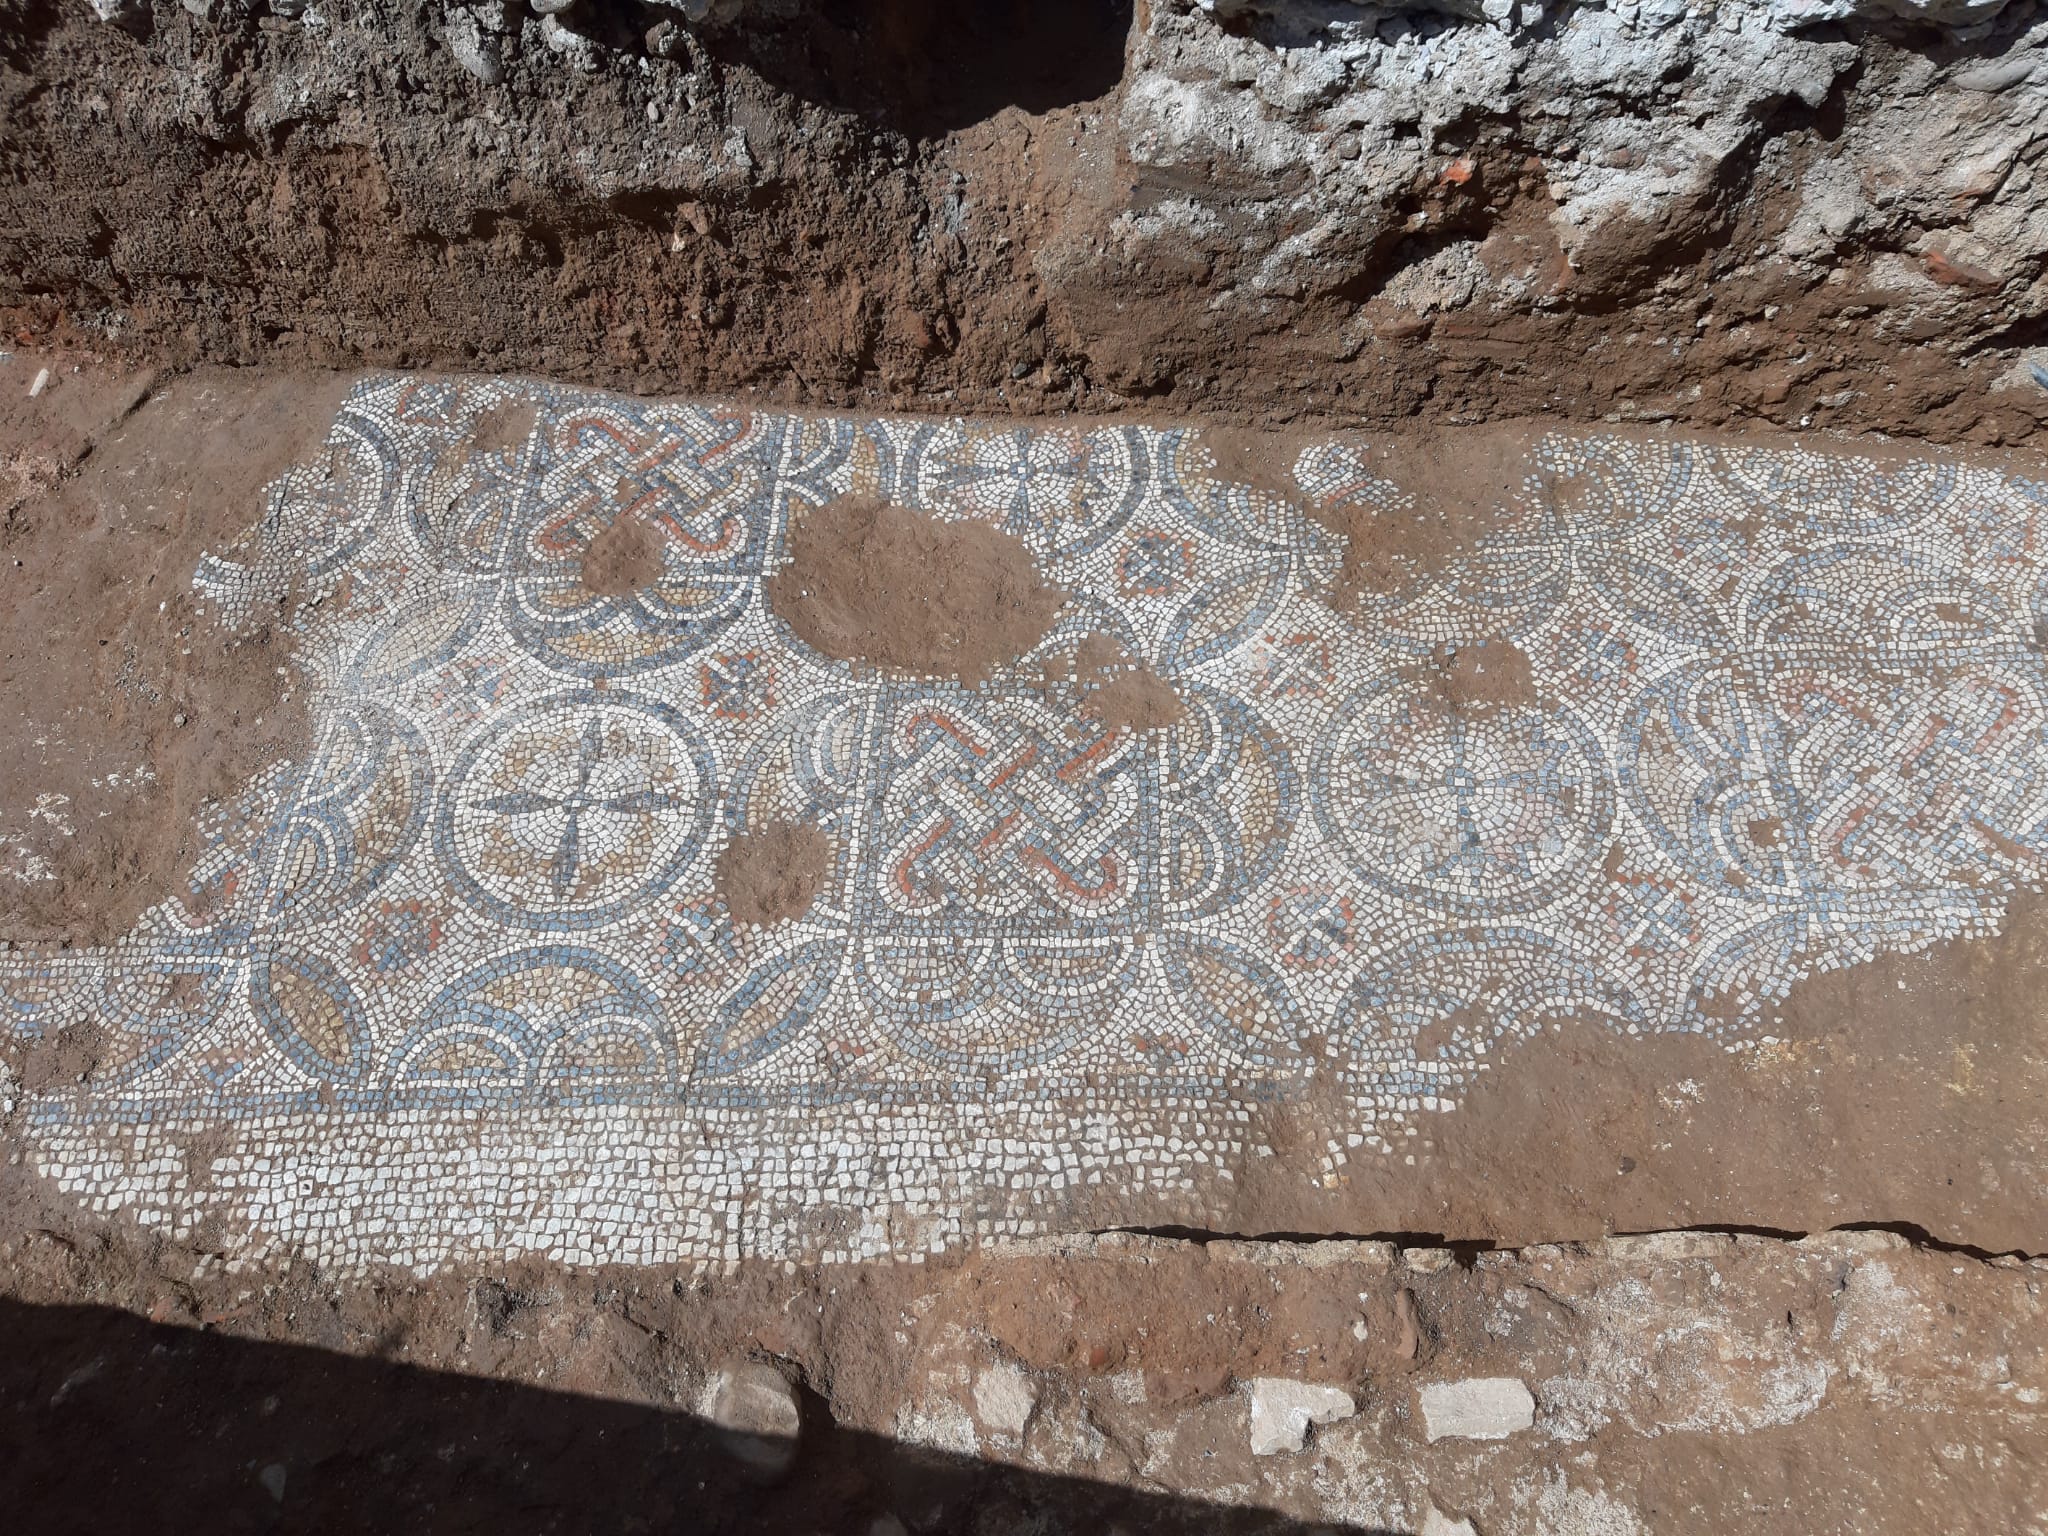 Fragmento del mosaico encontrado